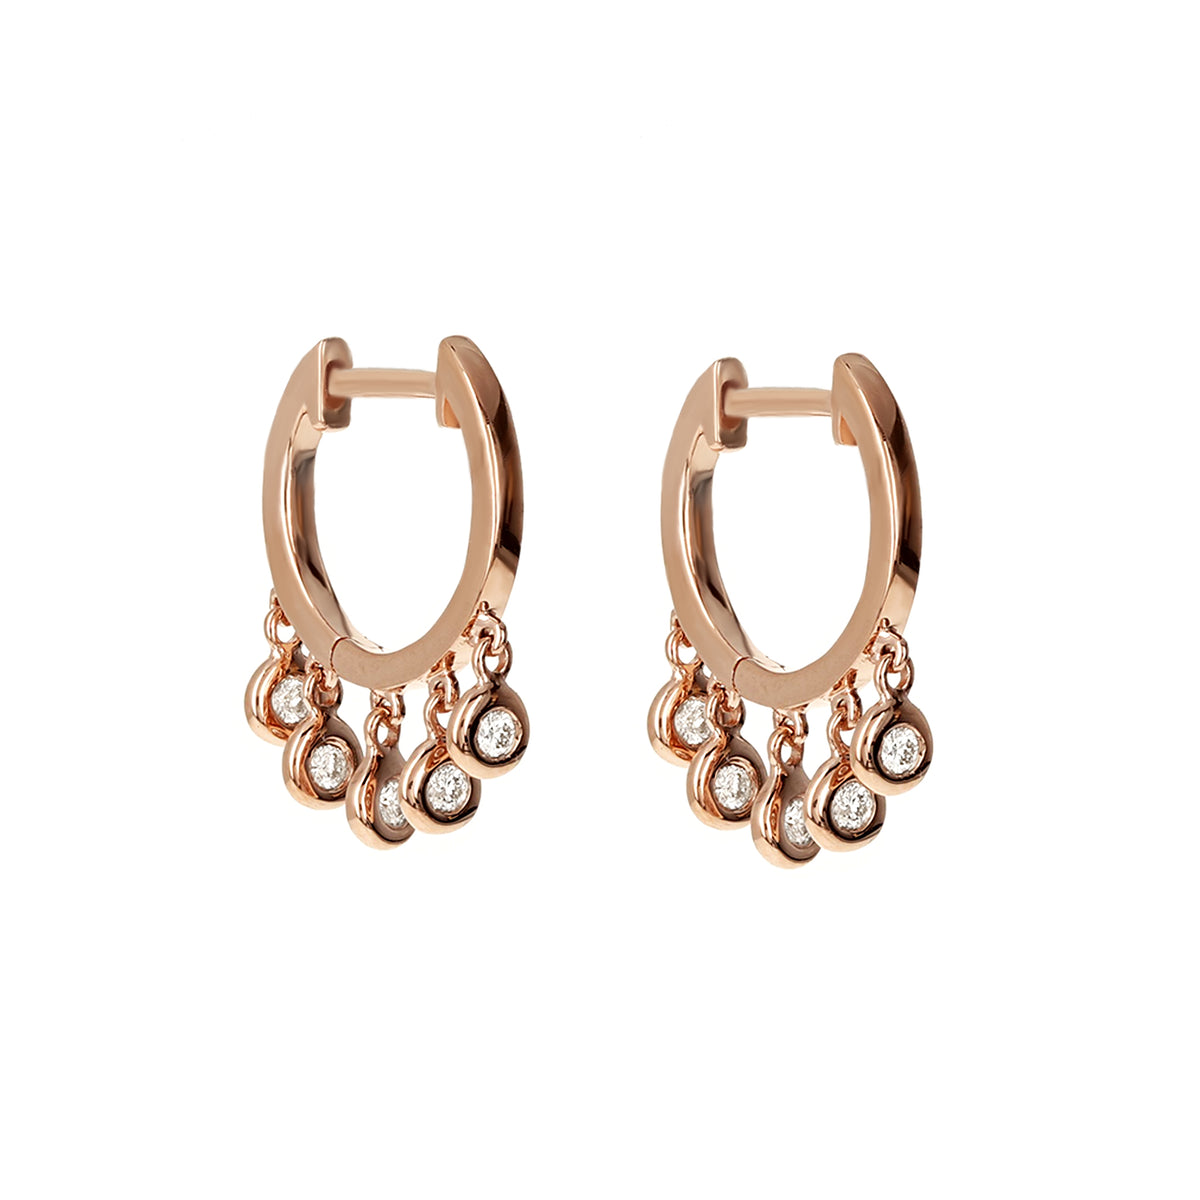 Interlinked Diamond Hoop Earrings on 14K Rose Gold